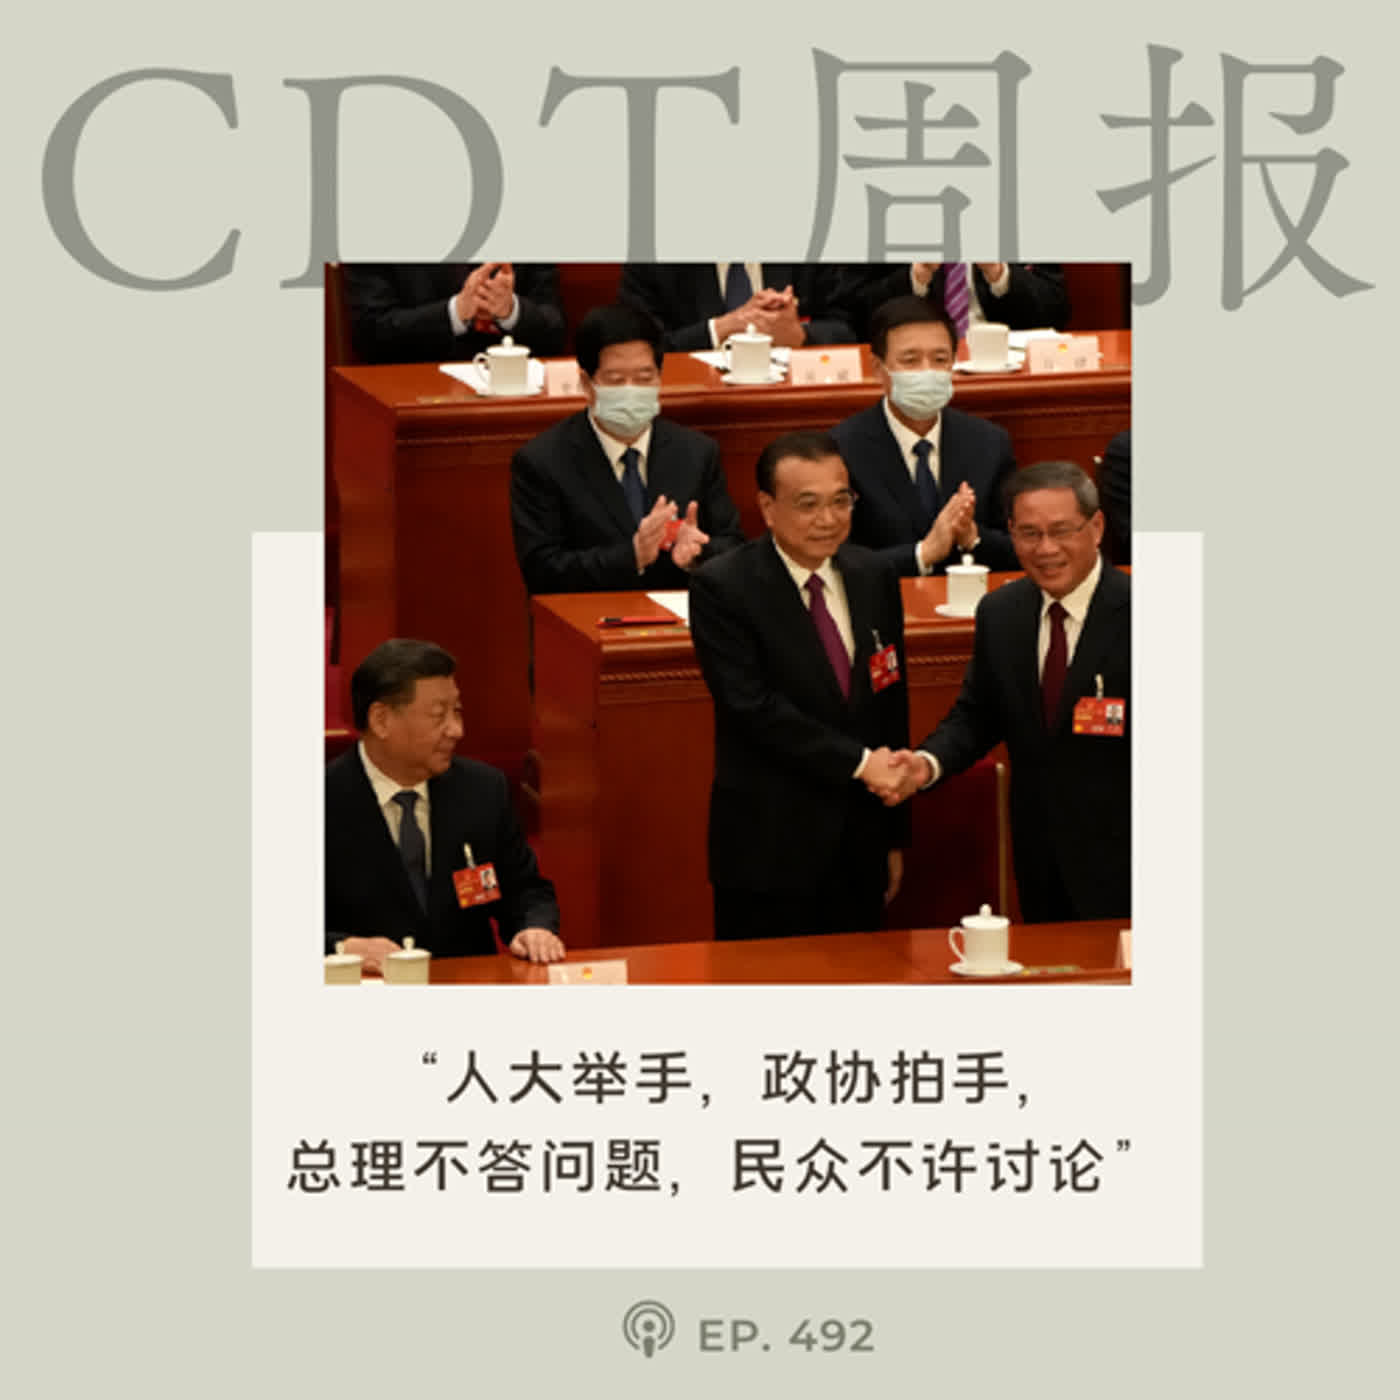 【第492期】CDT周报：“人大举手，政协拍手，总理不答问题，民众不许讨论”